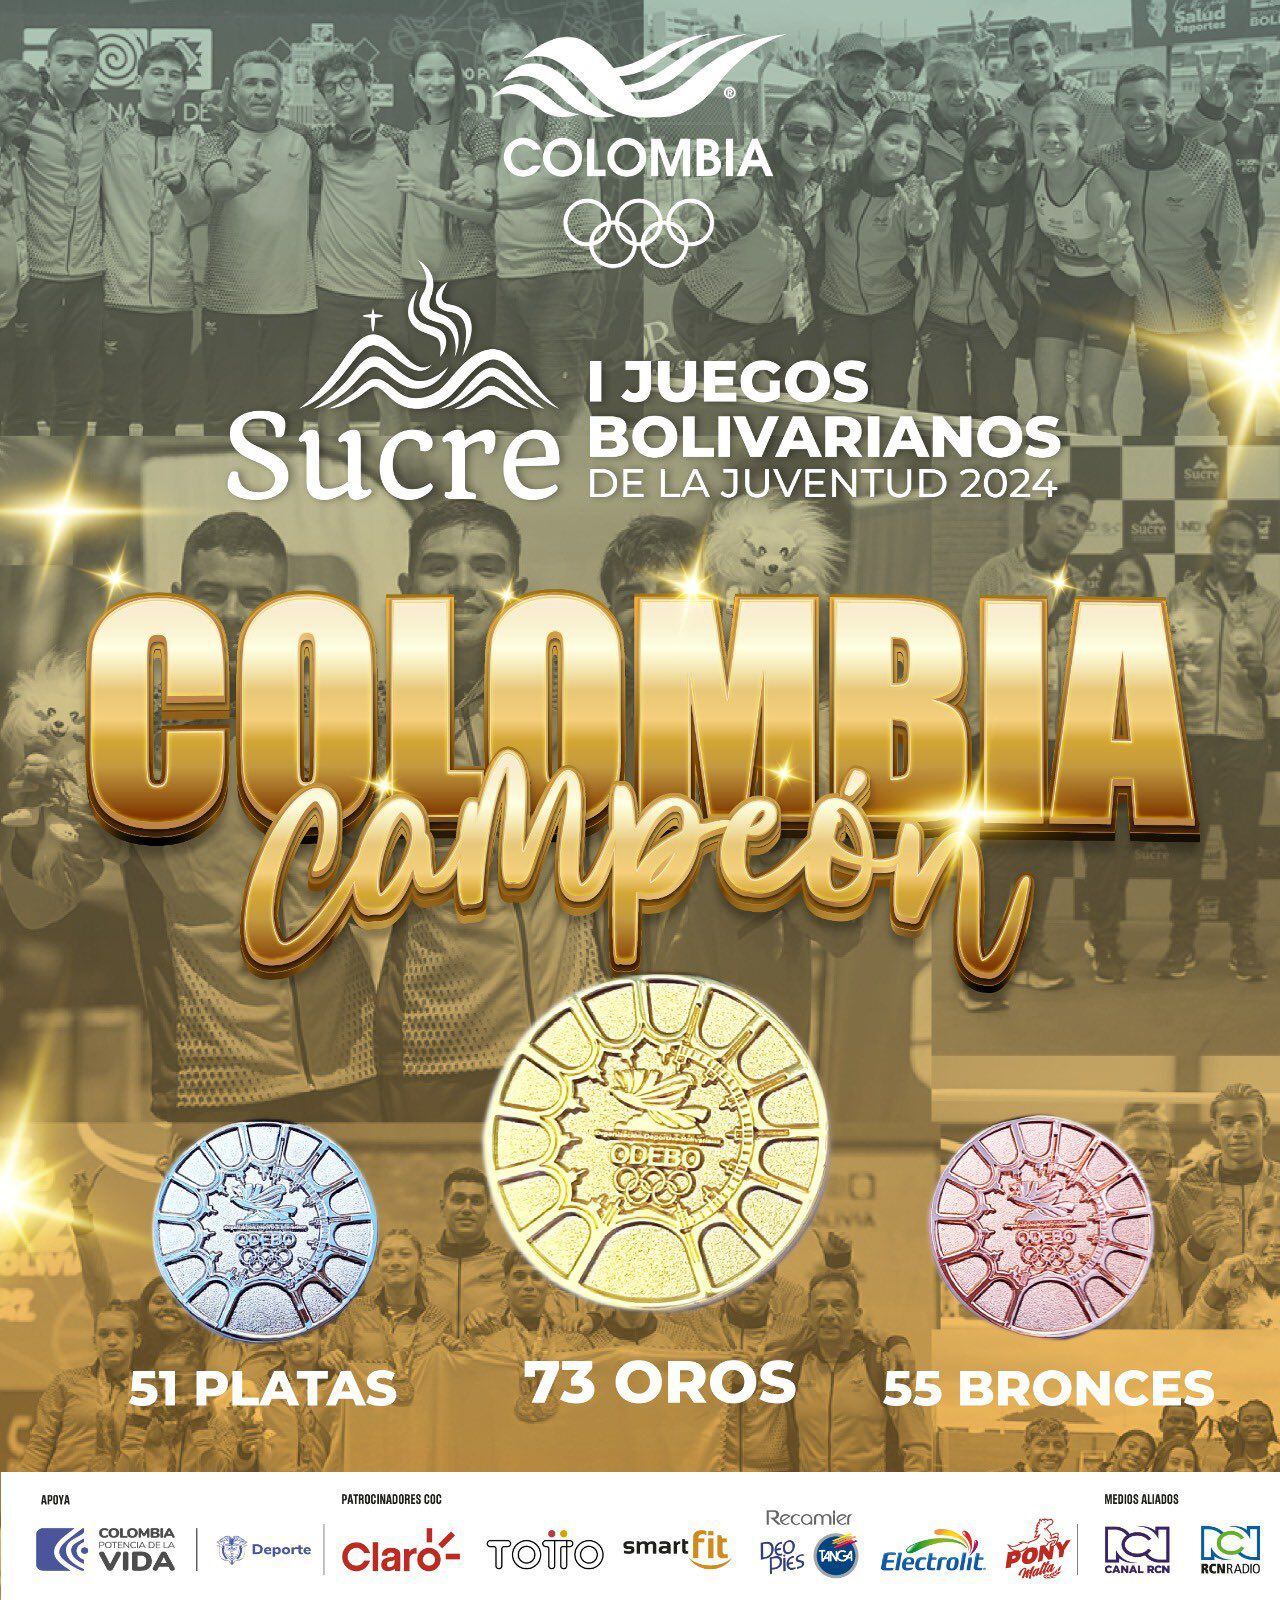 Colombia fue la delegación más ganadora de la primera edición de los Juegos Bolivarianos Sucre I 2024 - crédito Comité Olímpico Colombiano